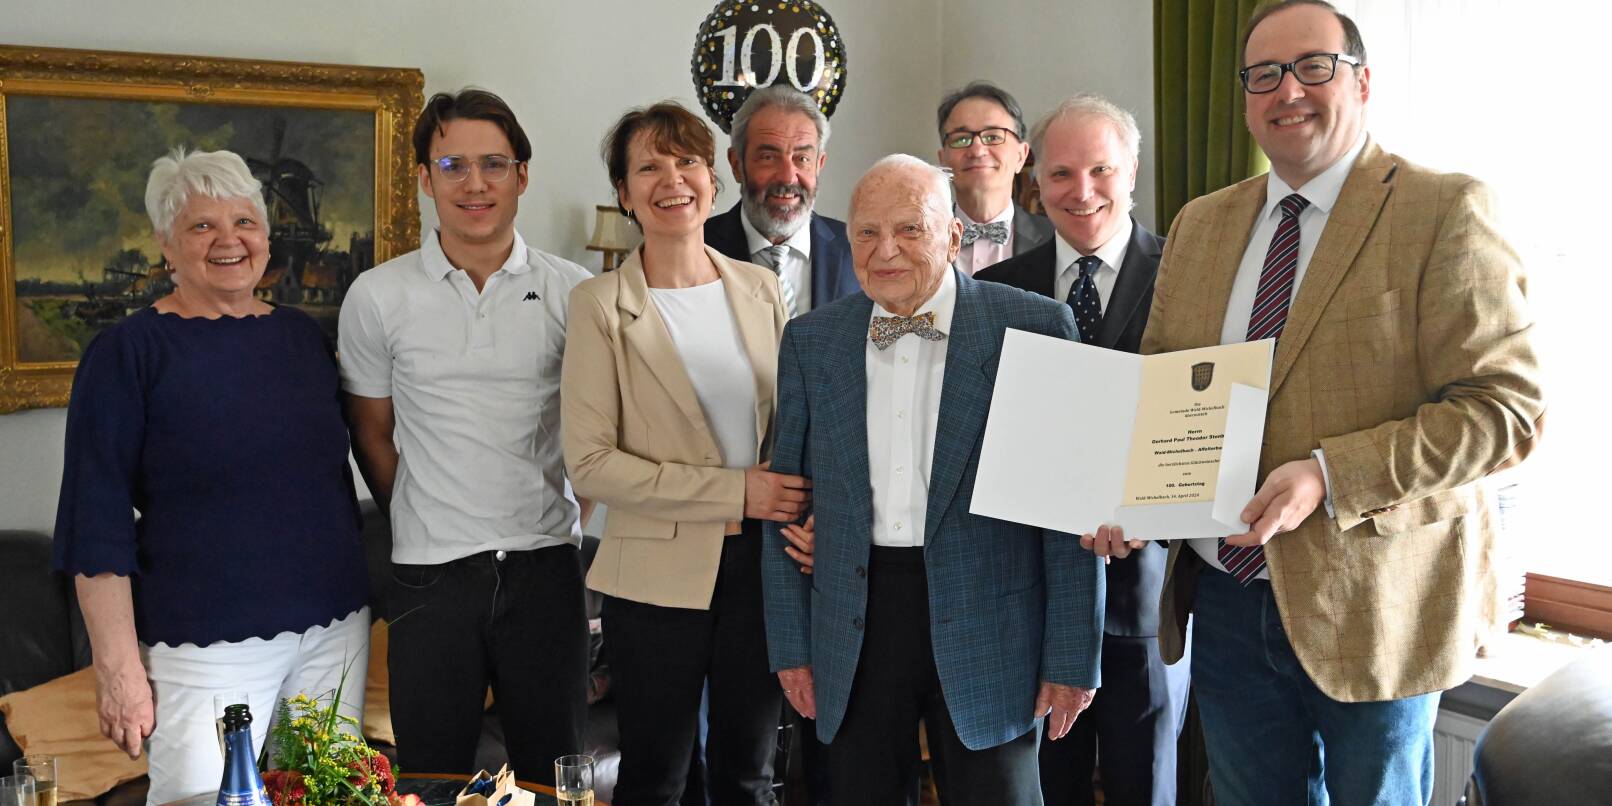 Seinen 100. Geburtstag feierte am Sonntag Gerhard Stenbeck (Vierter von rechts) in Affolterbach im Kreise seiner Familie. Bürgermeister Dr. Sascha Weber (rechts) gratulierte im Namen der Gemeinde Wald-Michelbach.